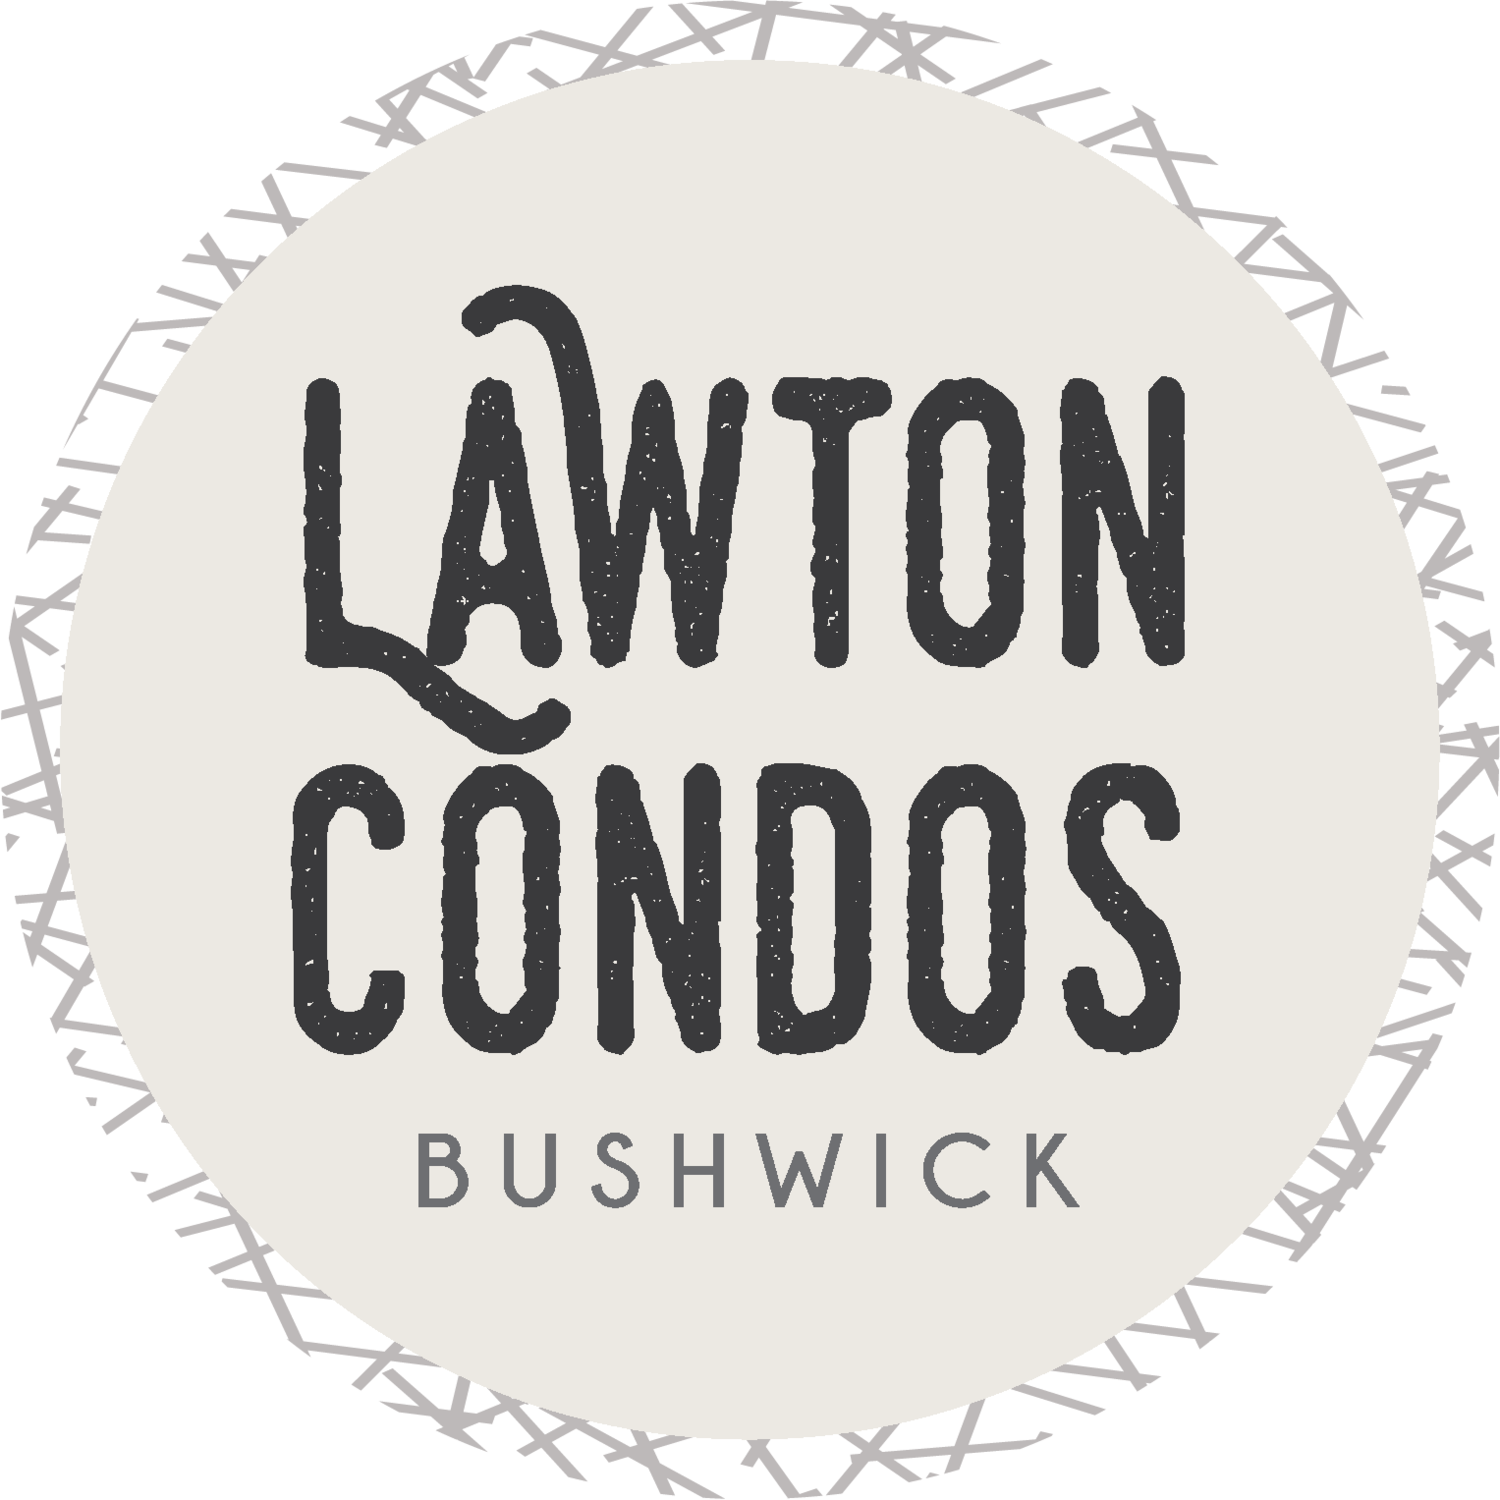 Lawton Condos Bushwick